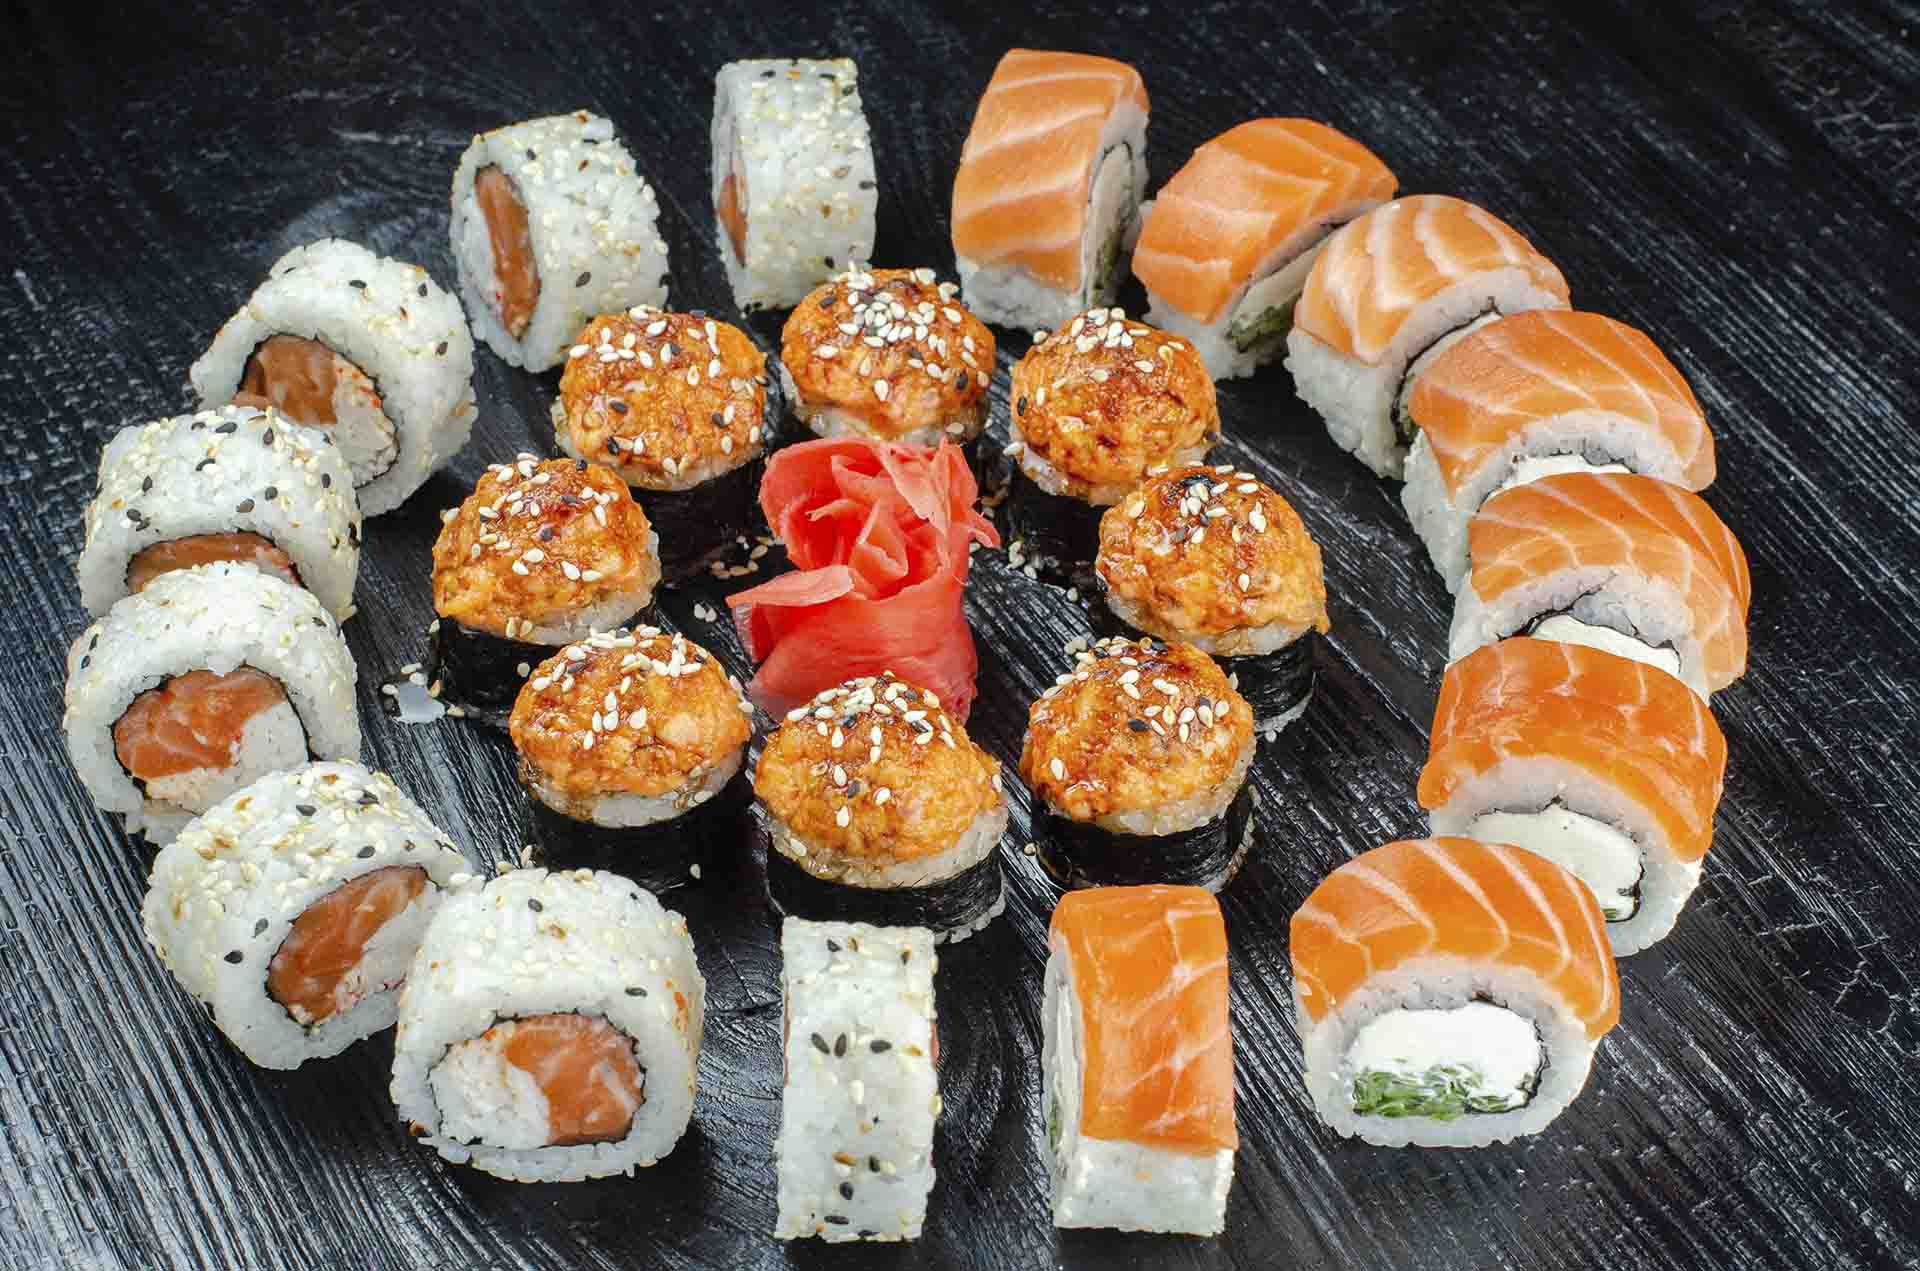 Заказать суши с доставкой в киеве фото 3